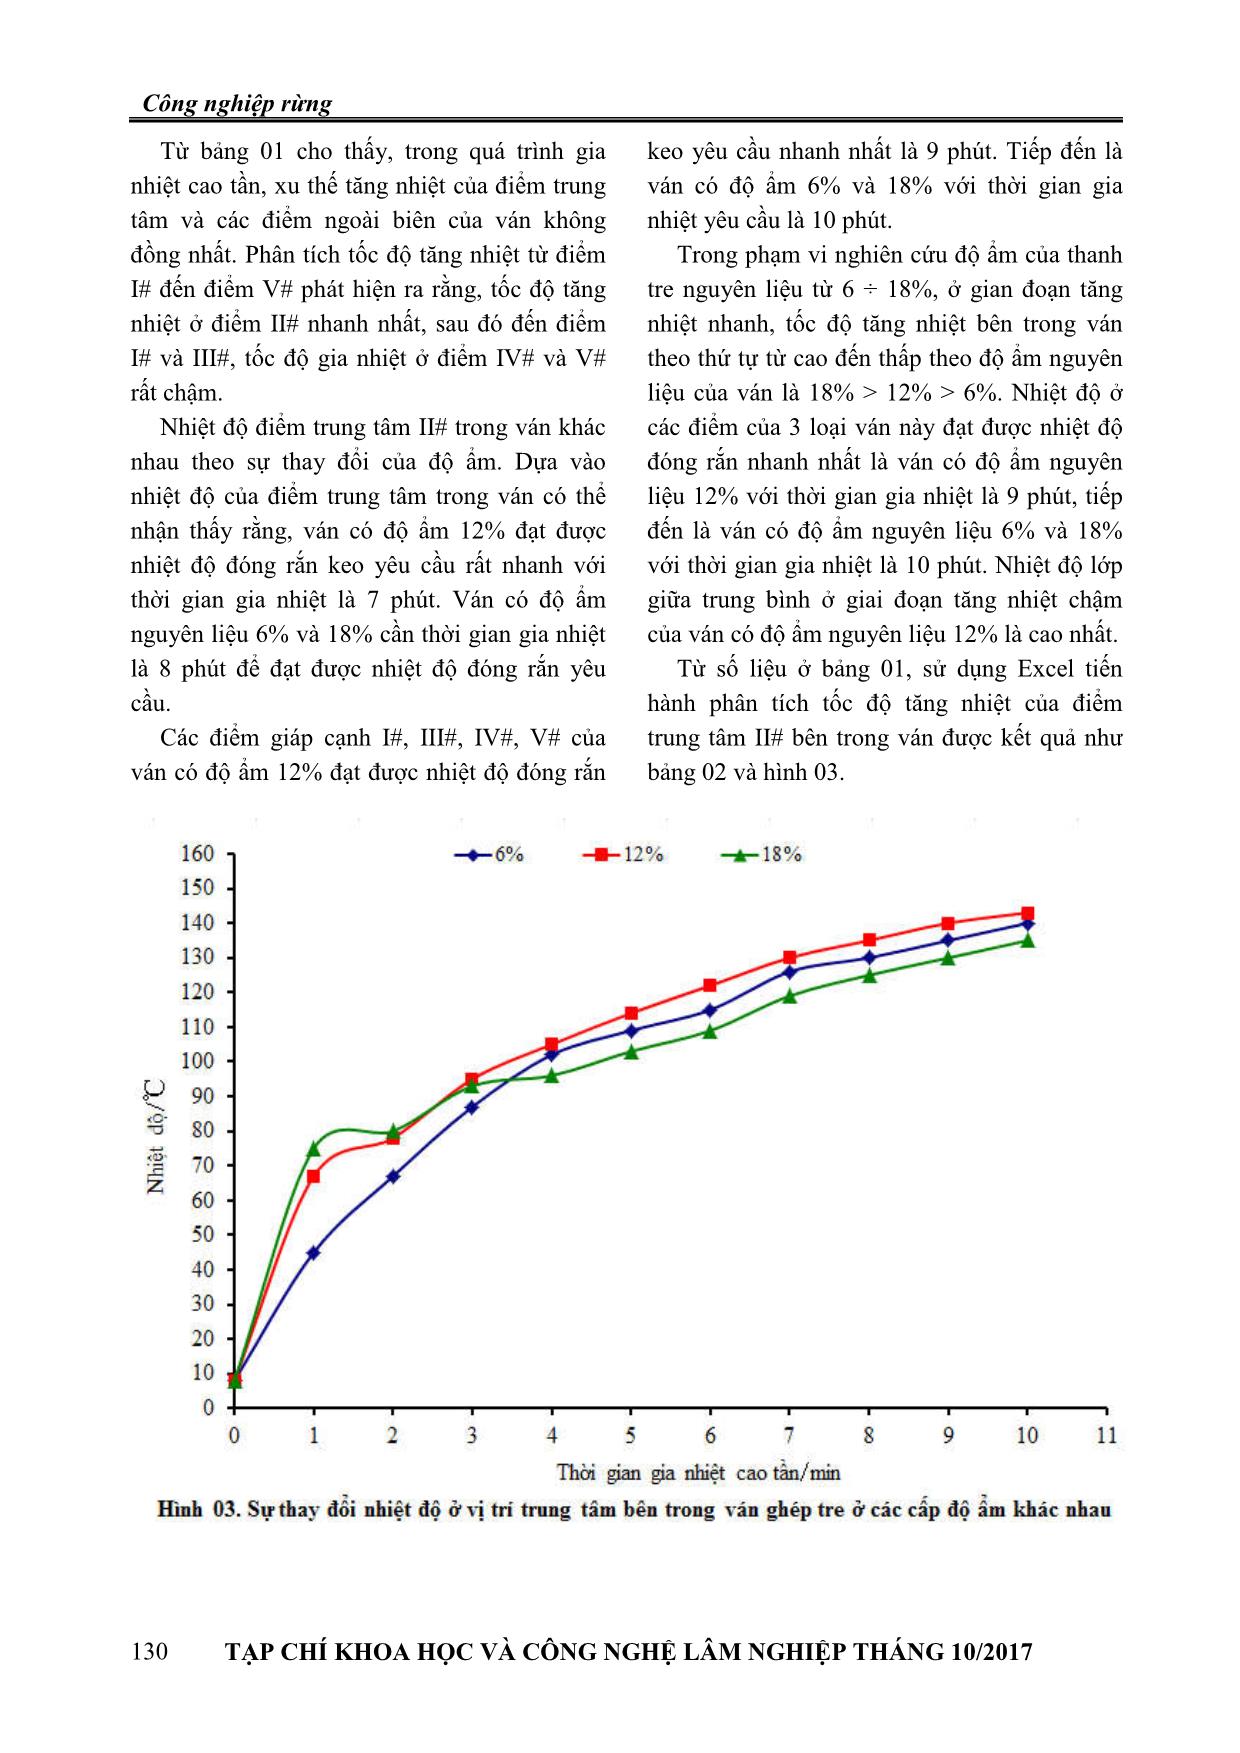 Ảnh hưởng của độ ẩm đến sự biến đổi nhiệt độ bên trong ván trong quá trình ép nhiệt cao tần ván ép khối tre trang 4